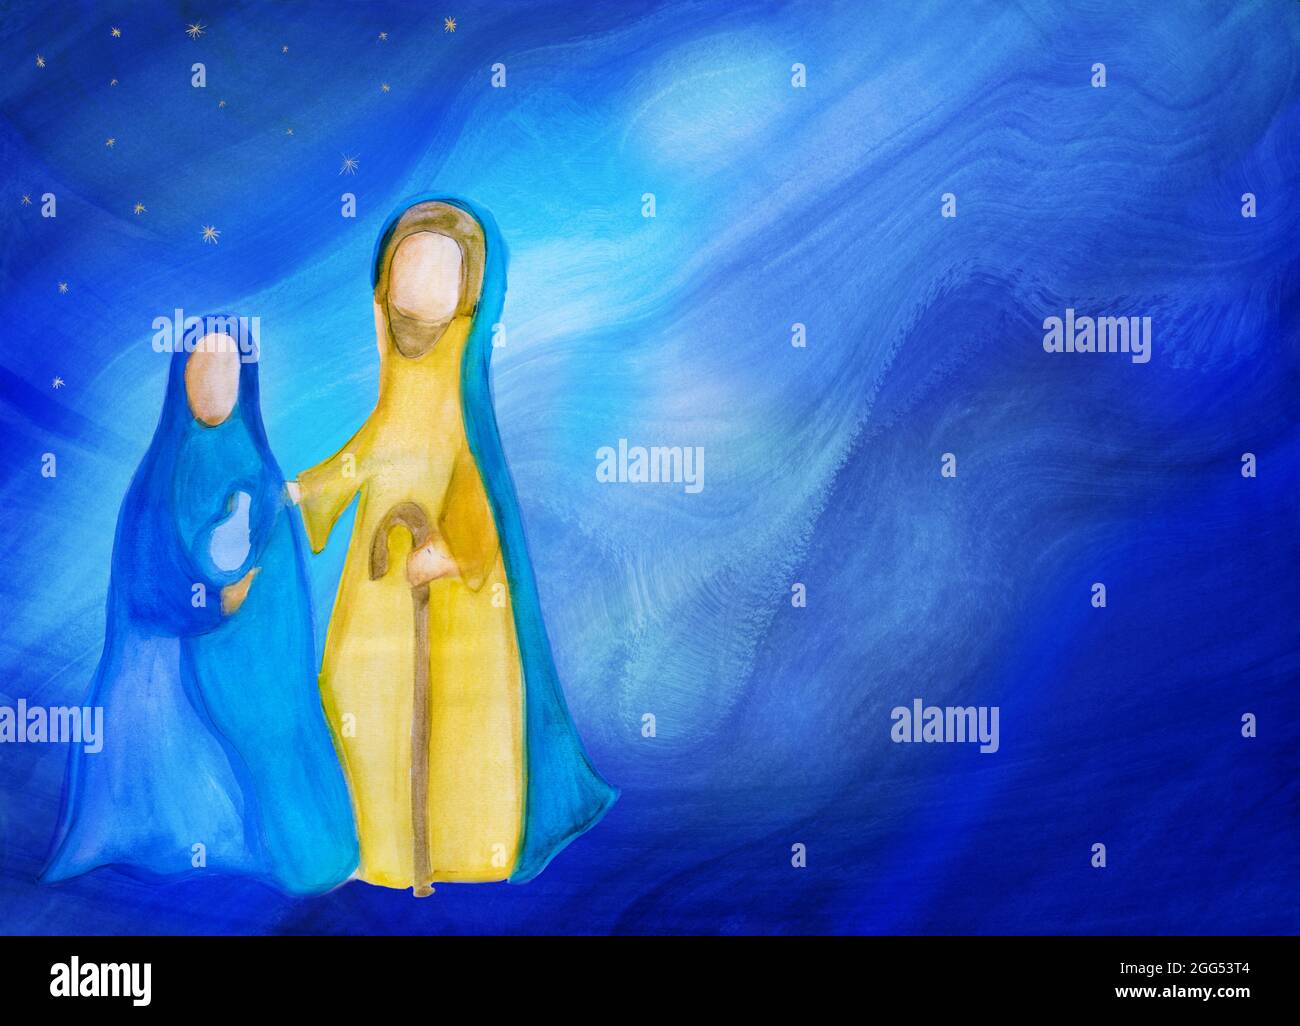 Scène de la nativité de Bethléem. Illustration de la scène de Noël aquarelle abstraite représentant la famille sainte avec Joseph Marie et le bébé Jésus. Bleu étoilé Banque D'Images